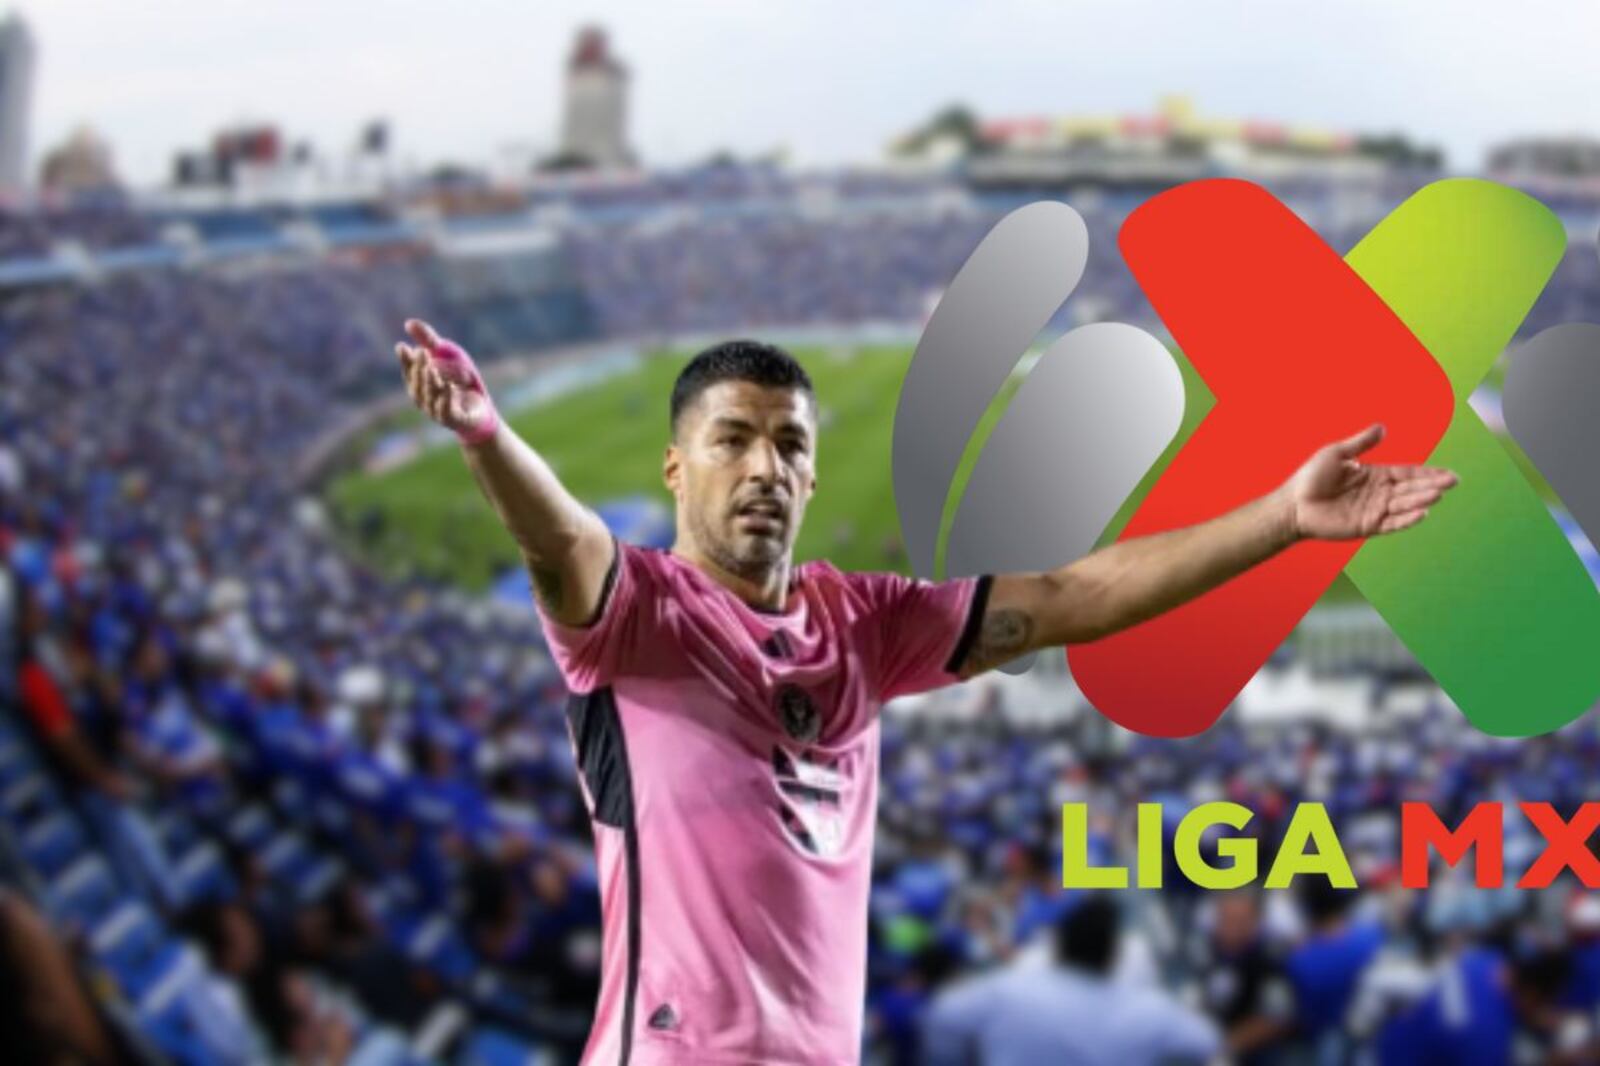 La verdadera razón por la que Luis Suárez no llegó a la Liga MX, no fue por dinero